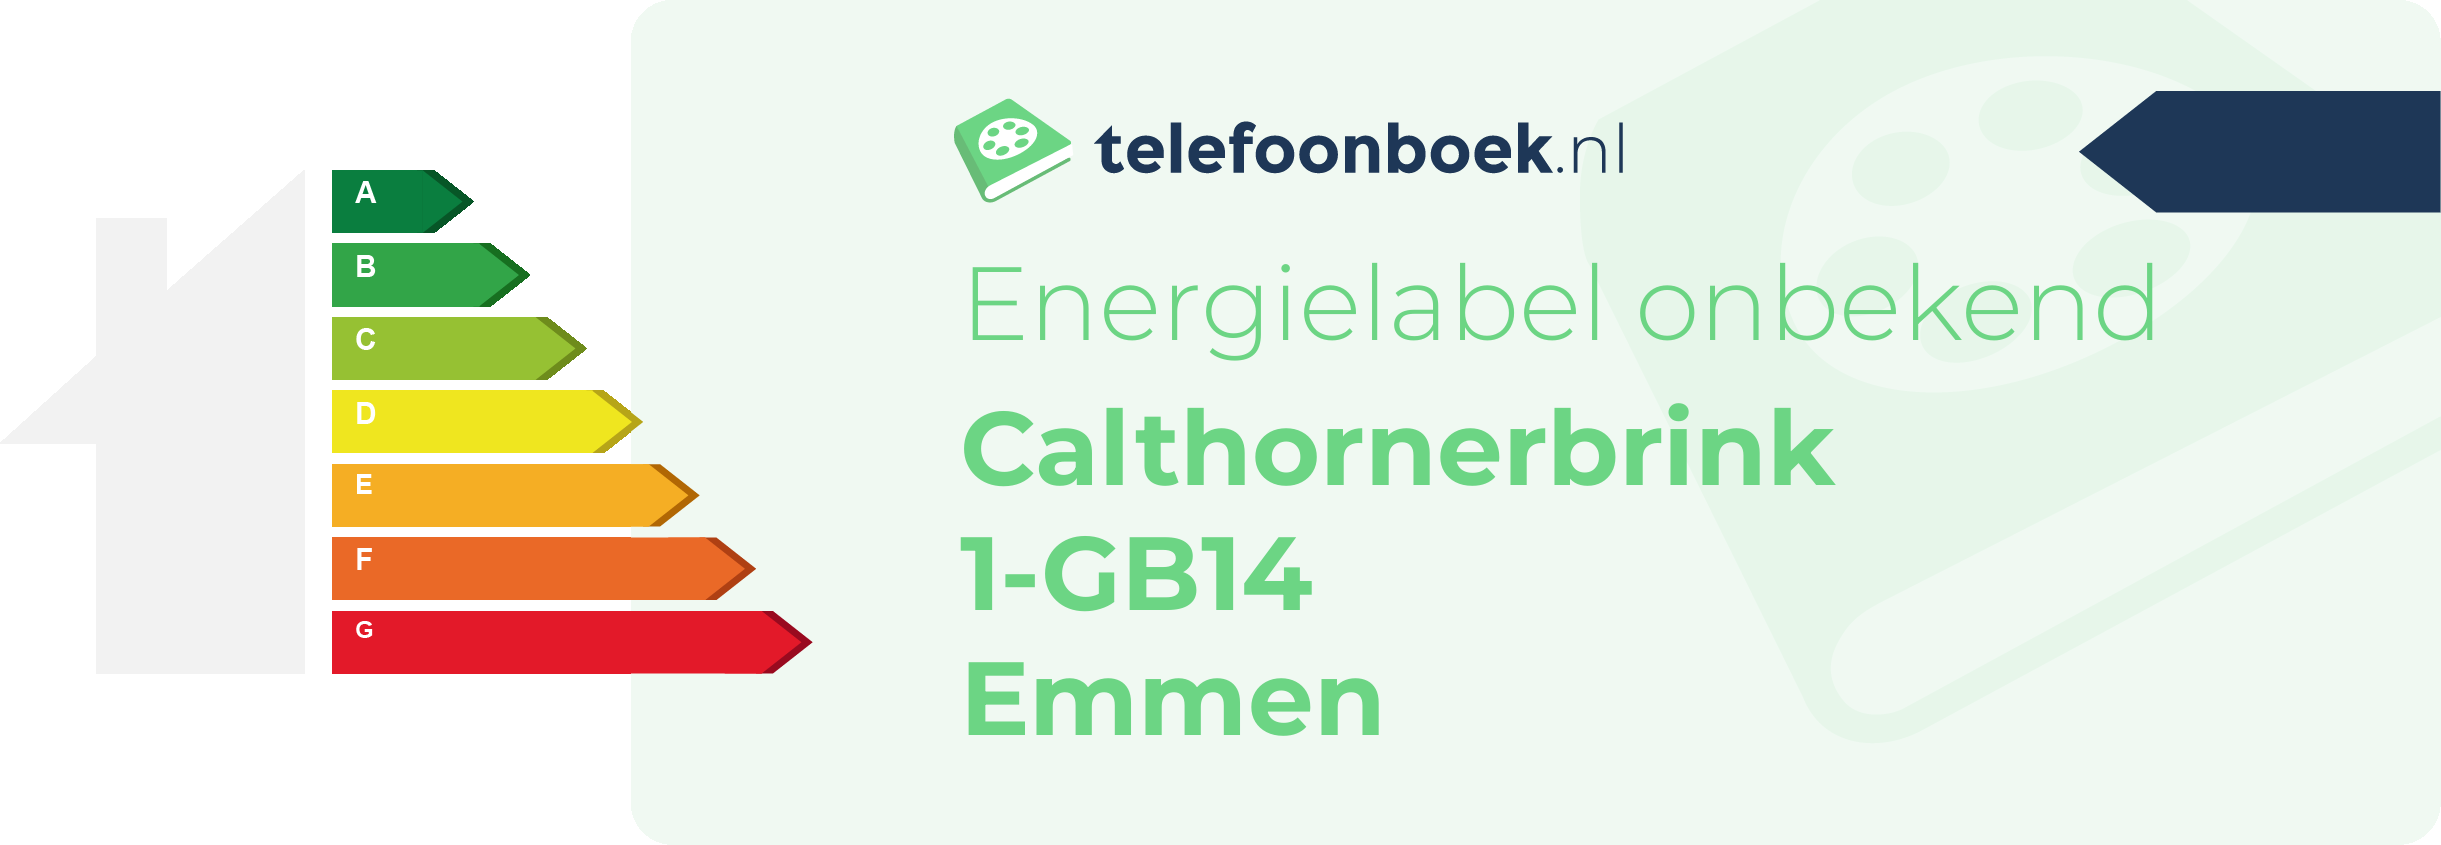 Energielabel Calthornerbrink 1-GB14 Emmen